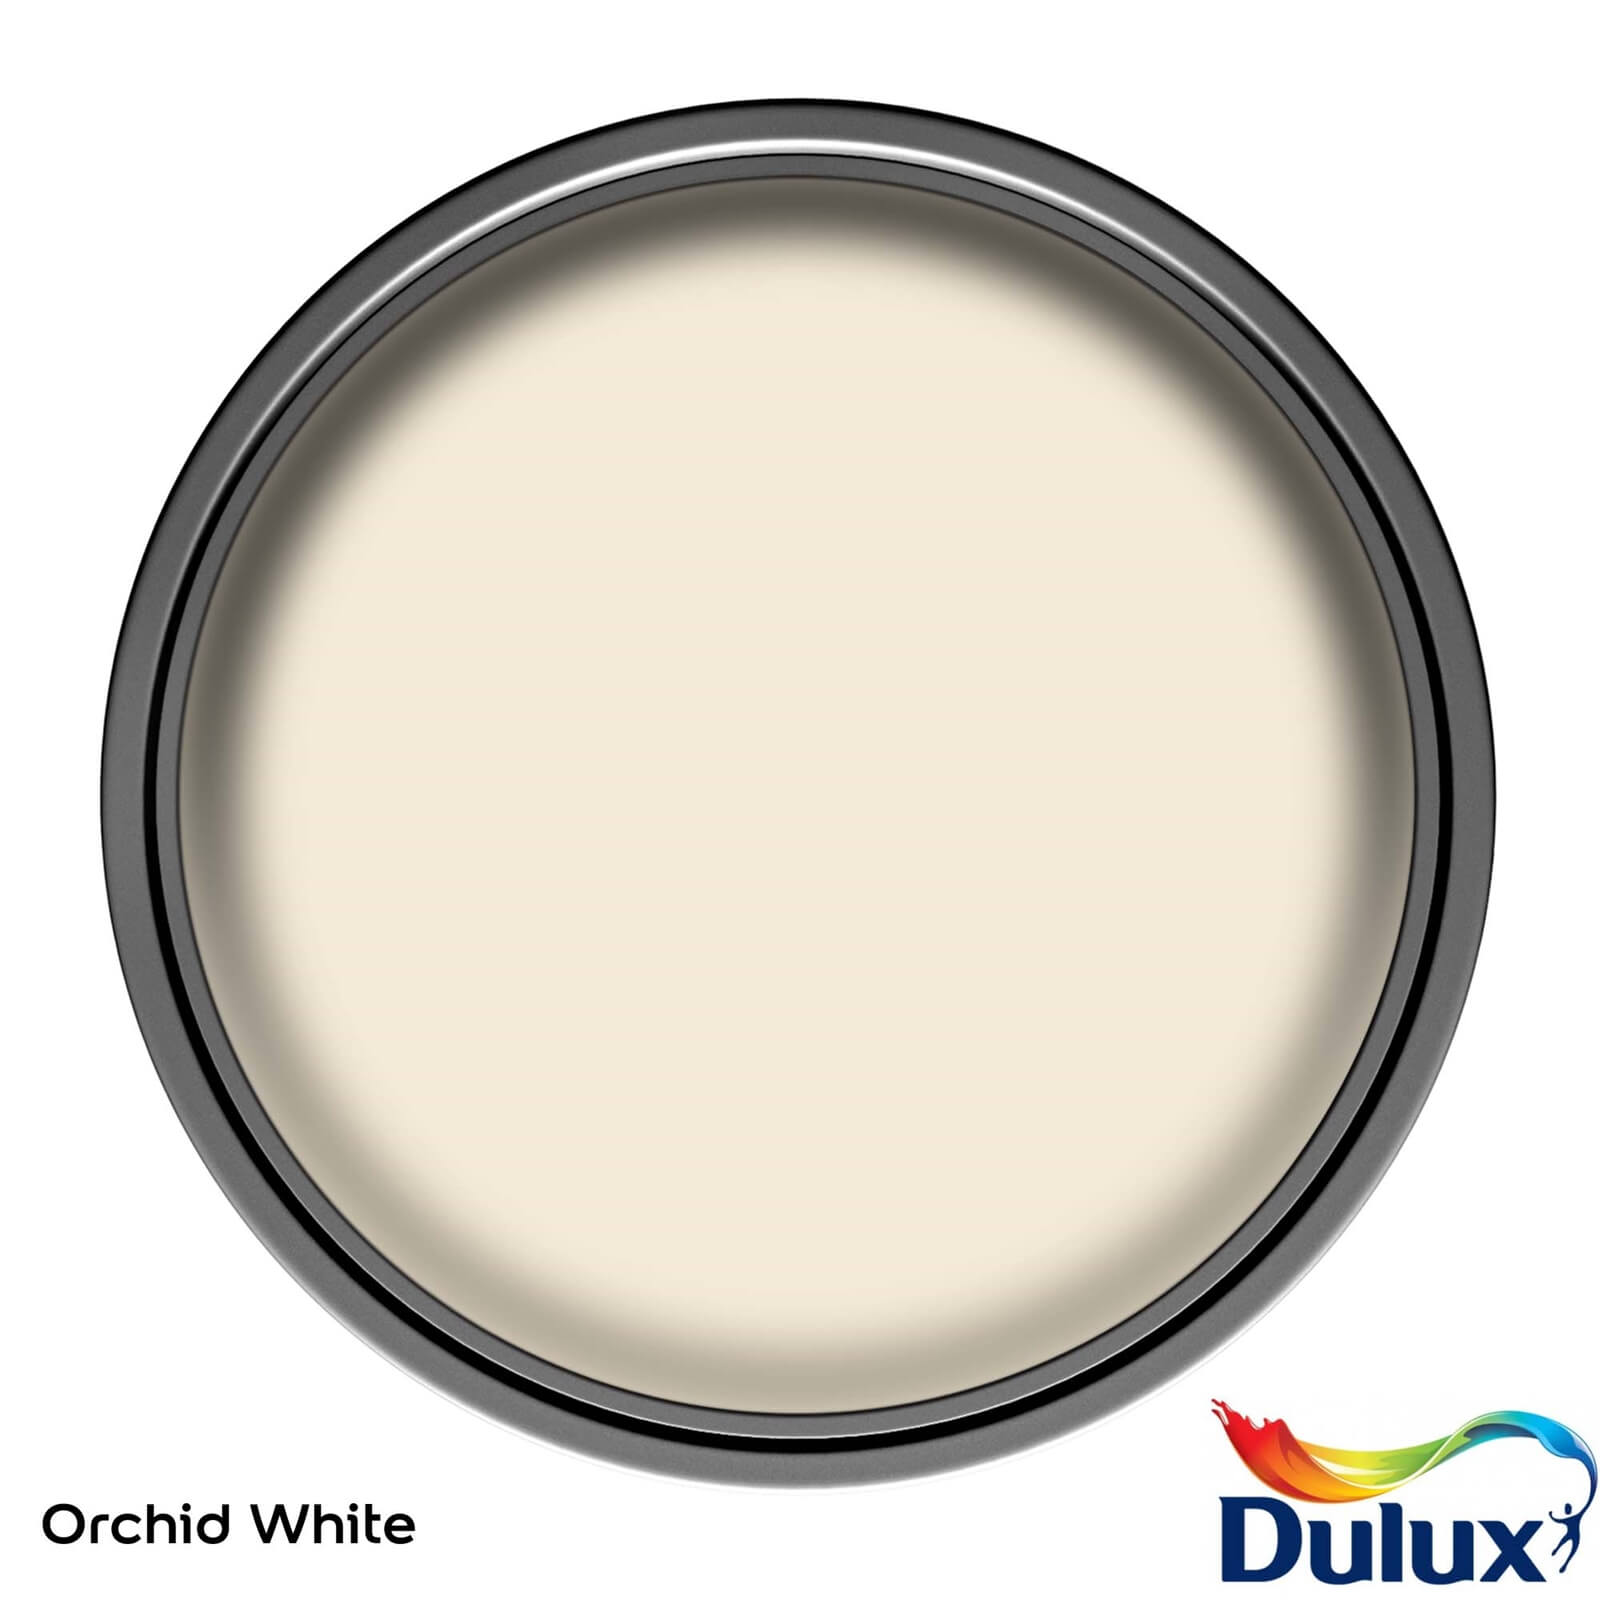 Dulux Silk Emulsion Paint Orchid White - 2.5L